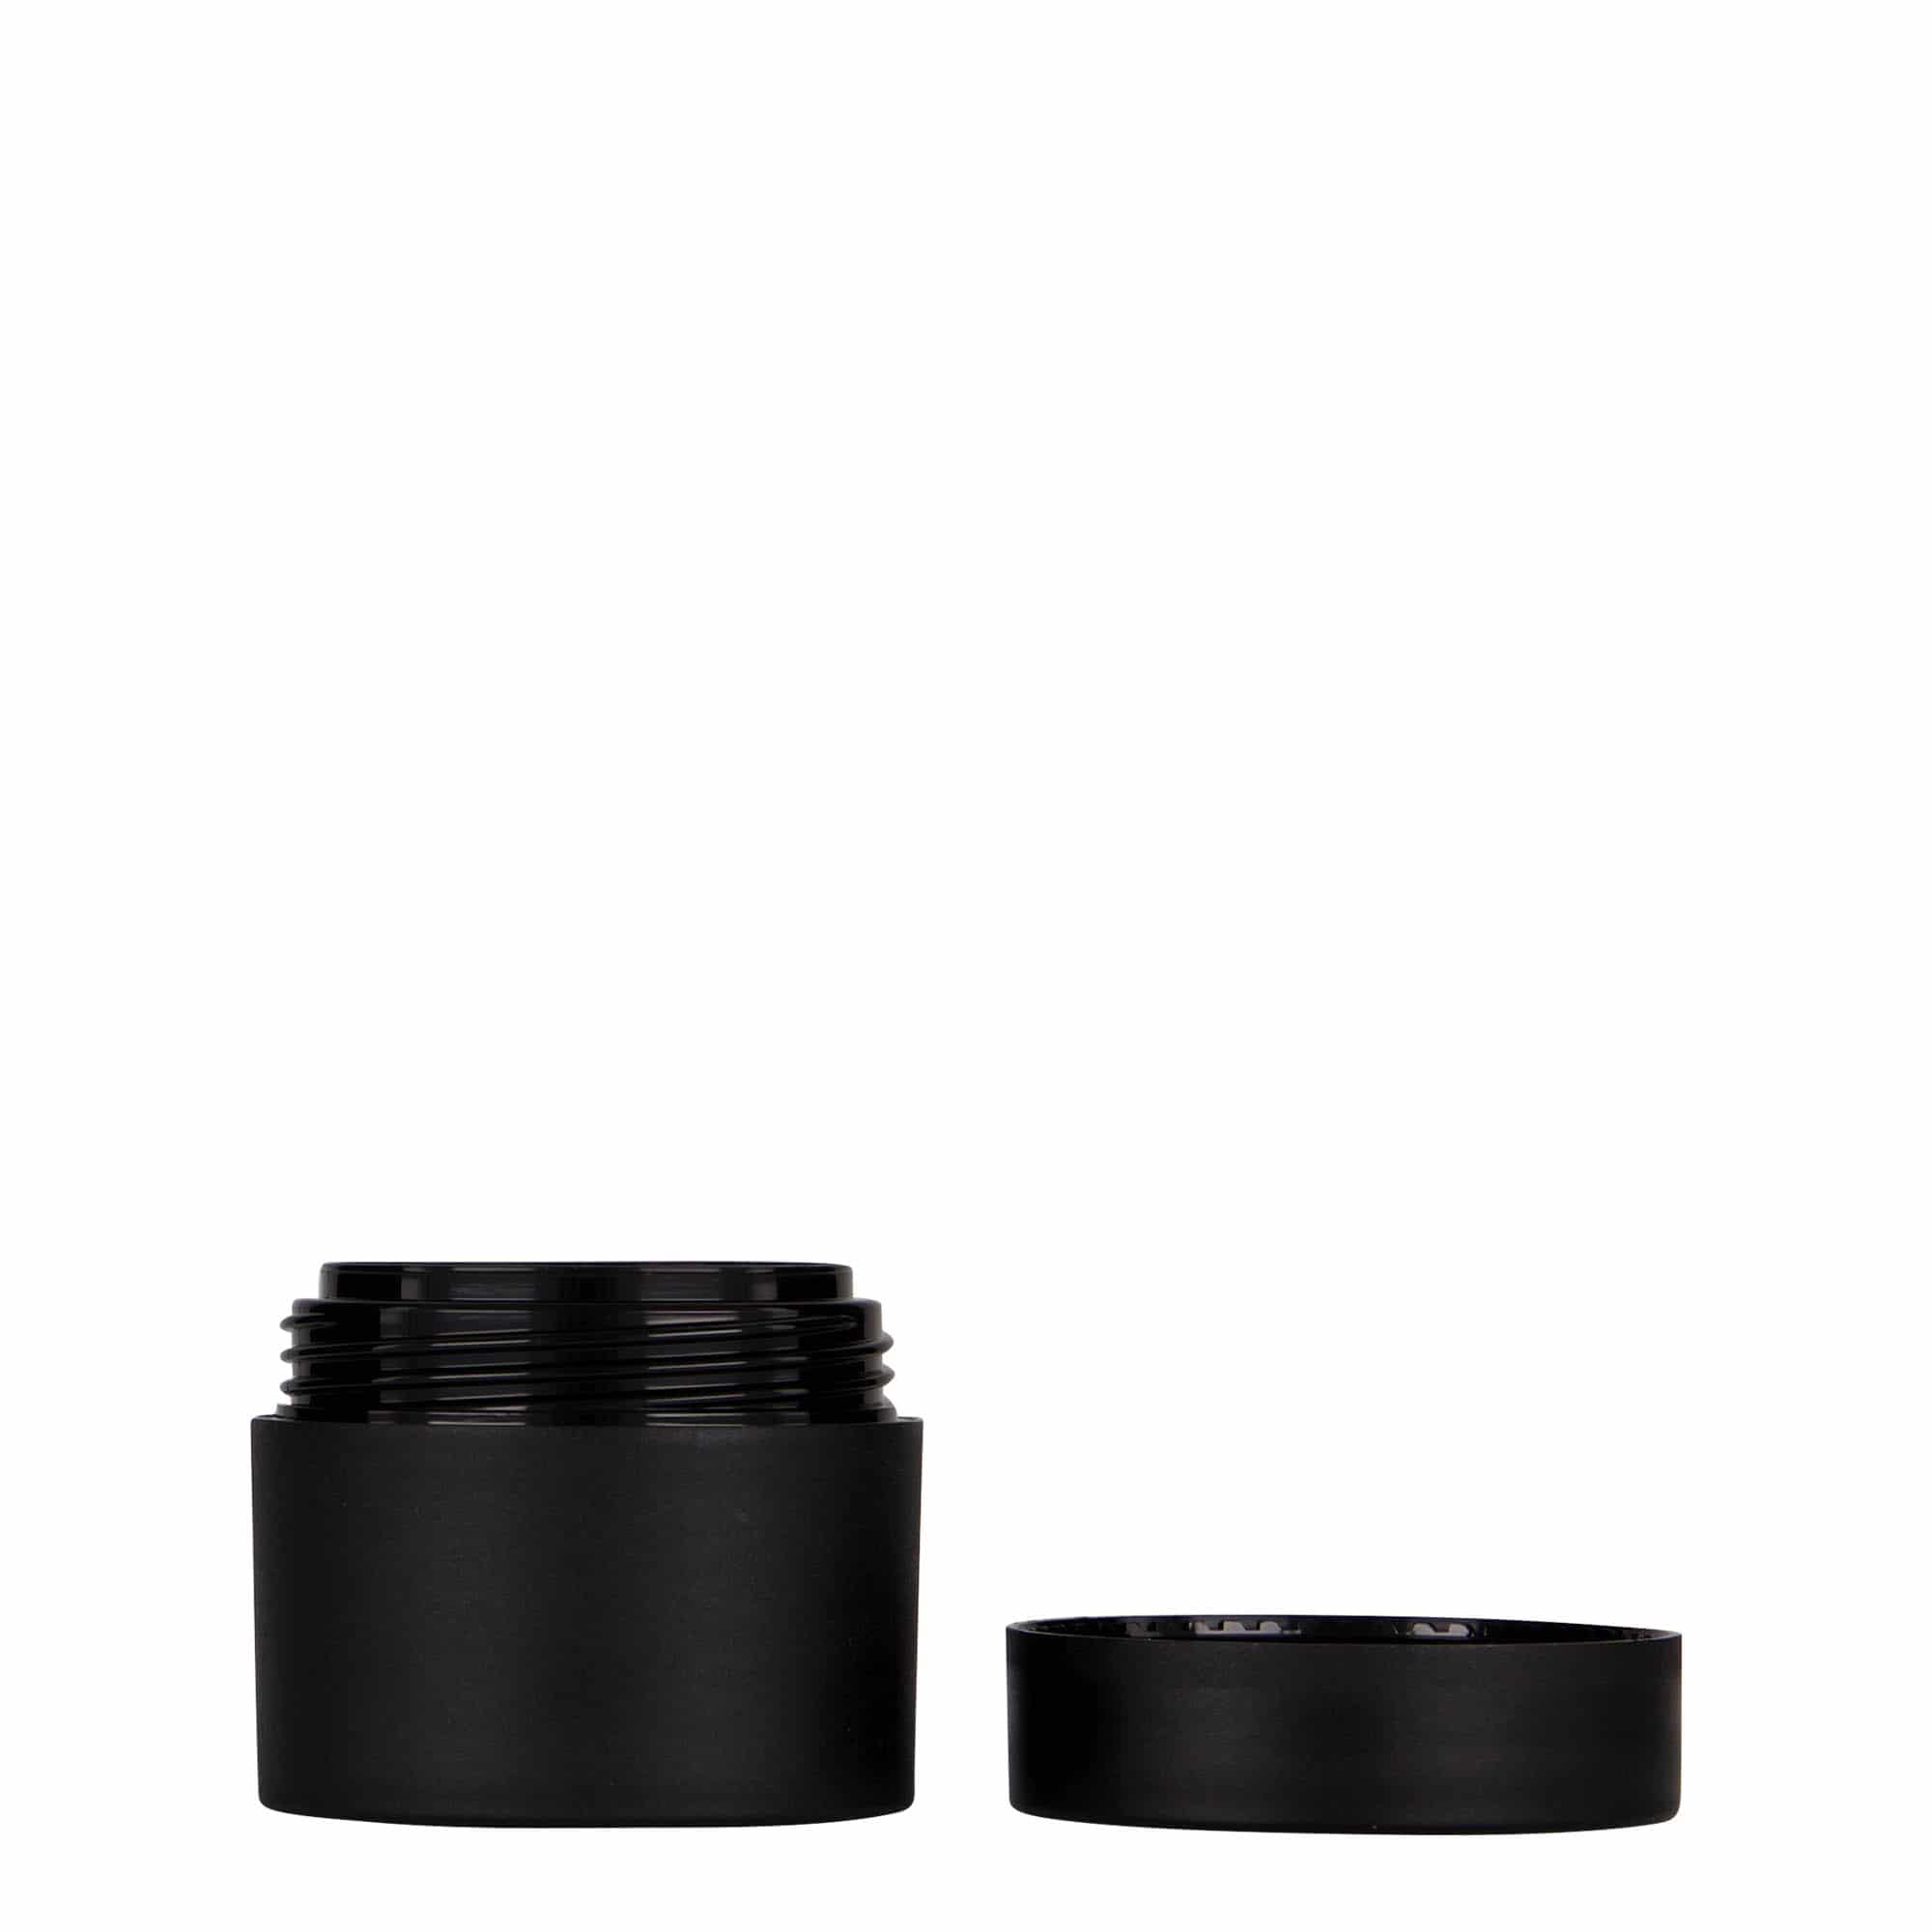 30 ml plastic jar 'Antonella', PP, black, closure: screw cap